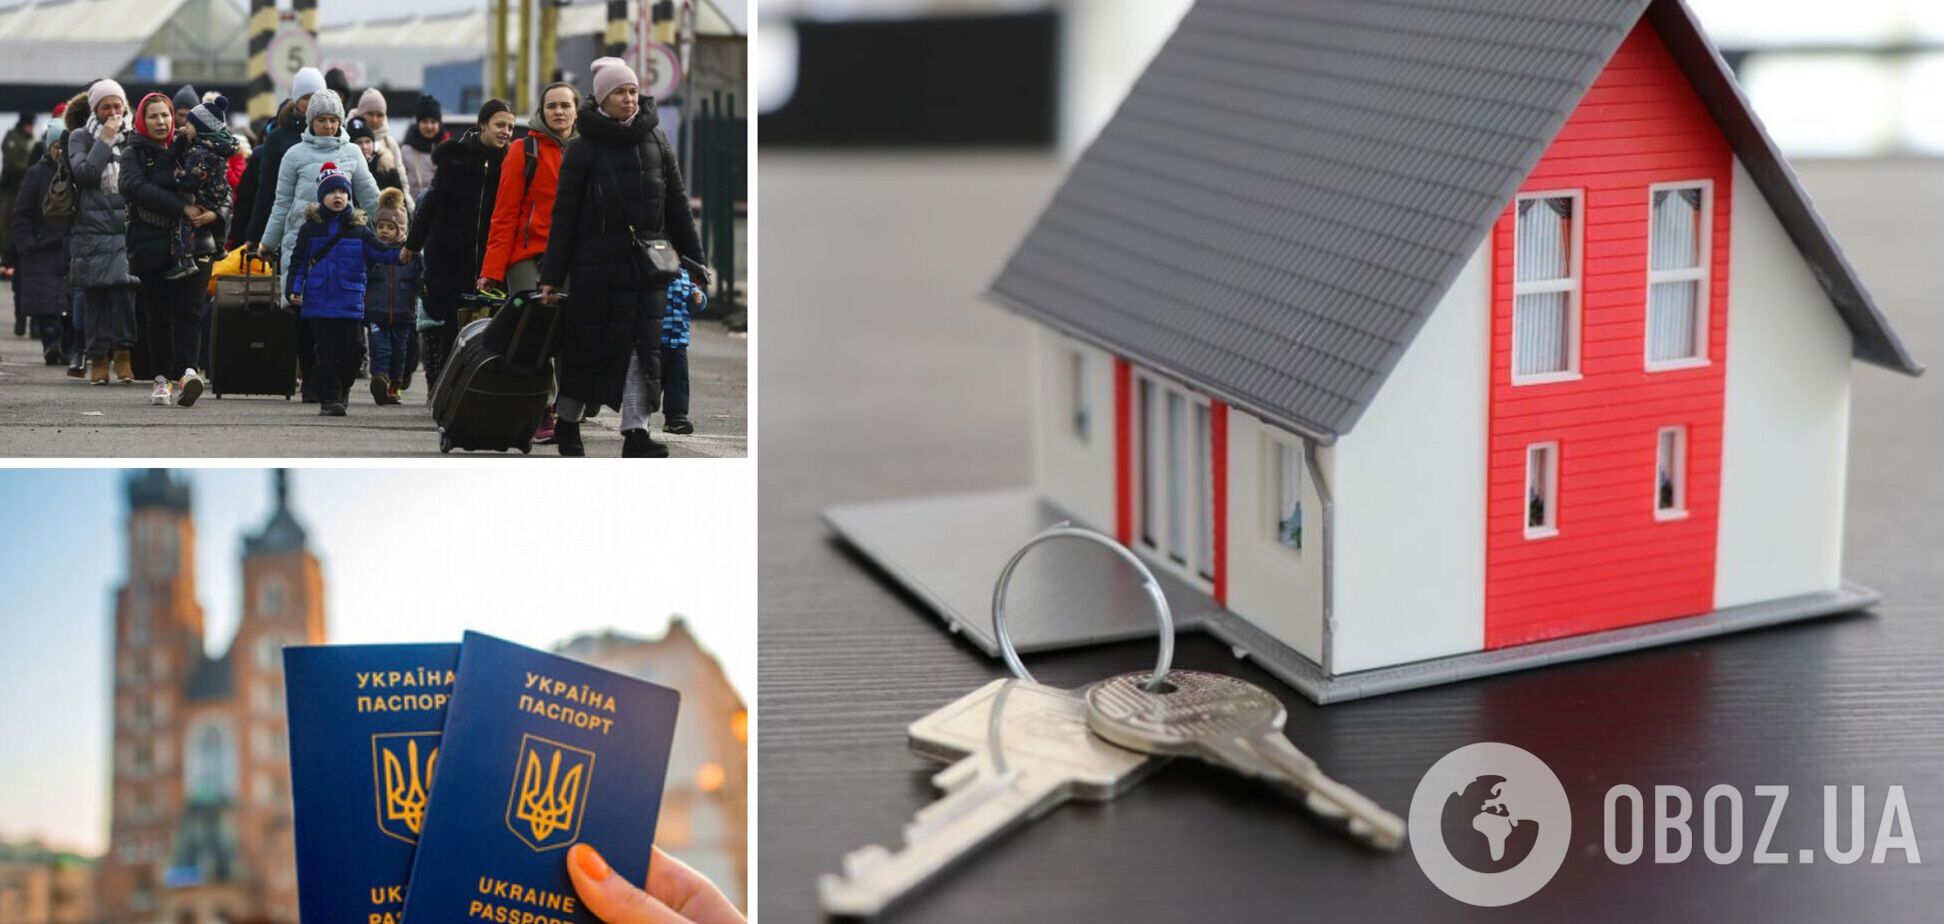 Как украинским беженцам и ВПЛ найти жилье, если не хватает средств на аренду